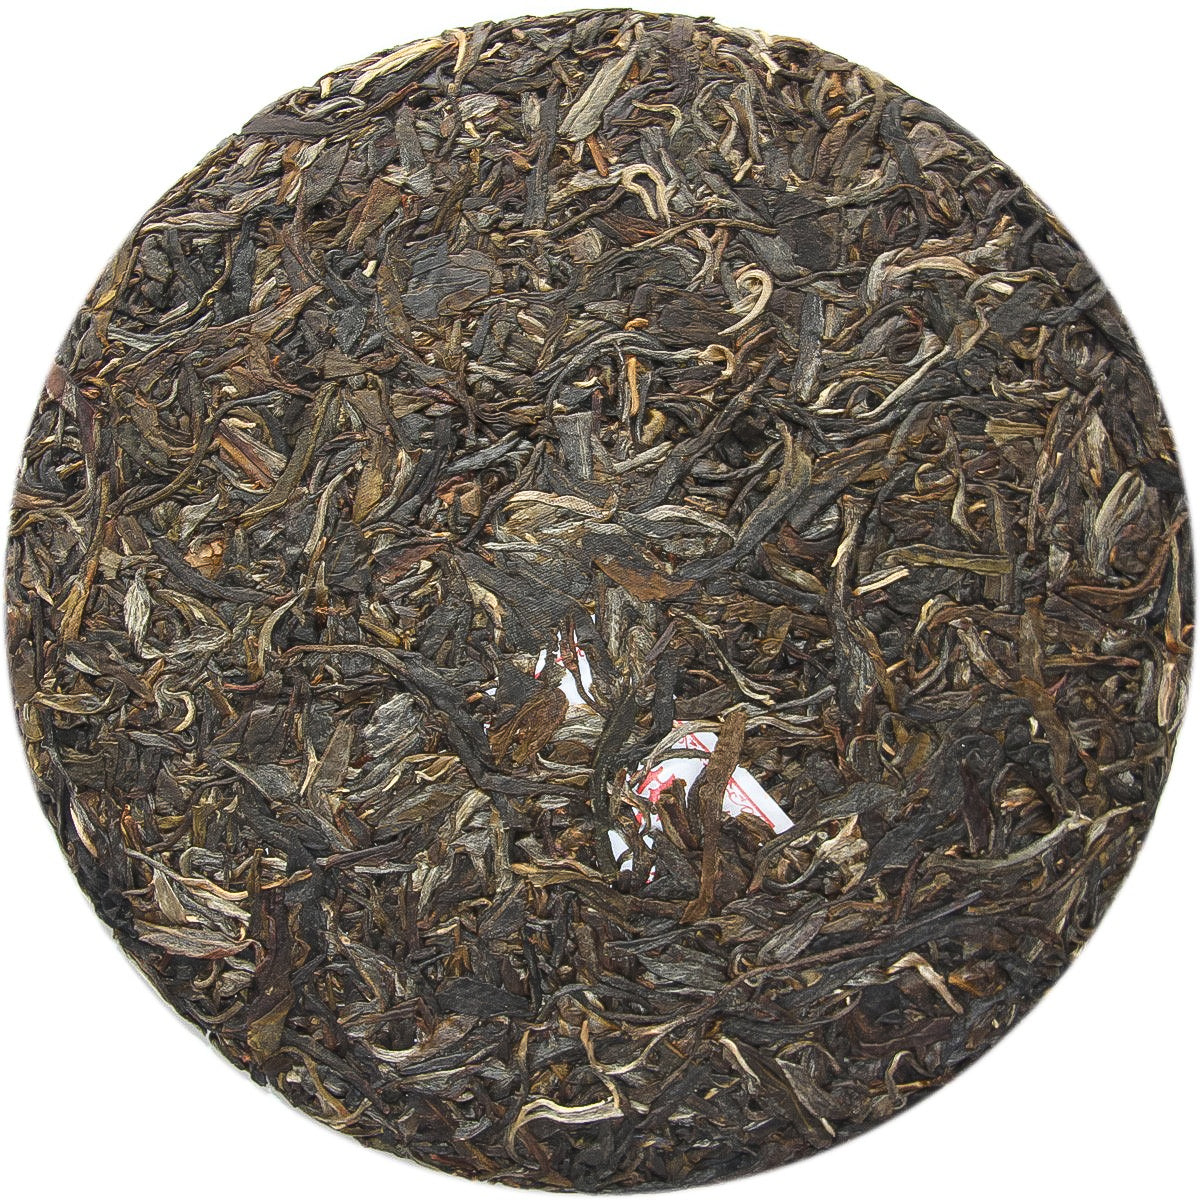 
                  
                    Chen Sheng Hao 2012 King Pu'er Tea Leaves
                  
                